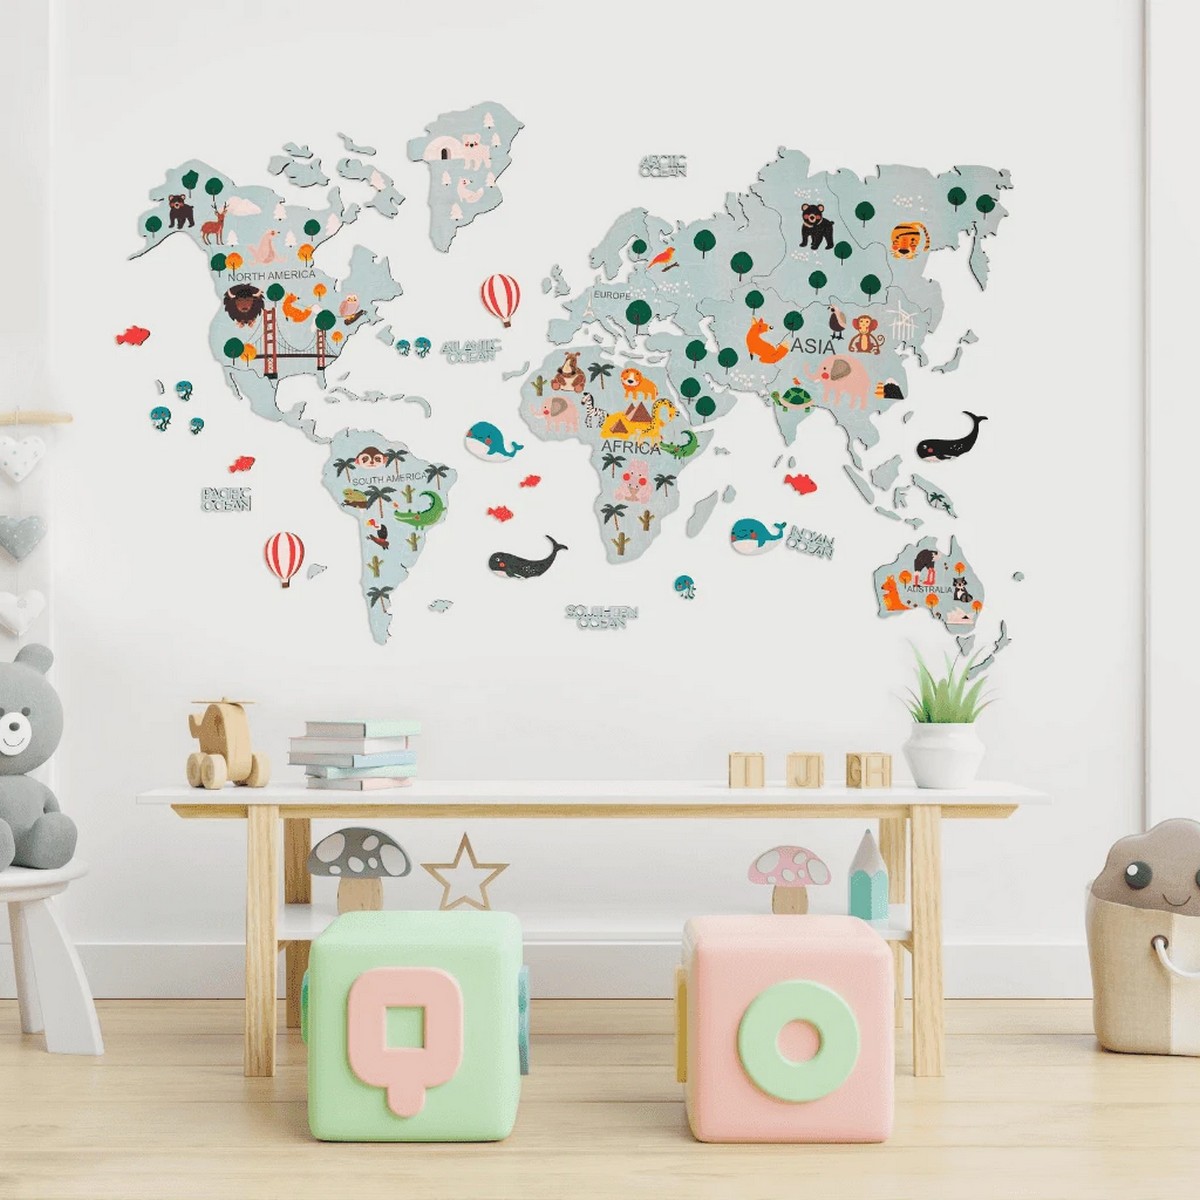 خريطة العالم 2d خشبية للأطفال على الحائط